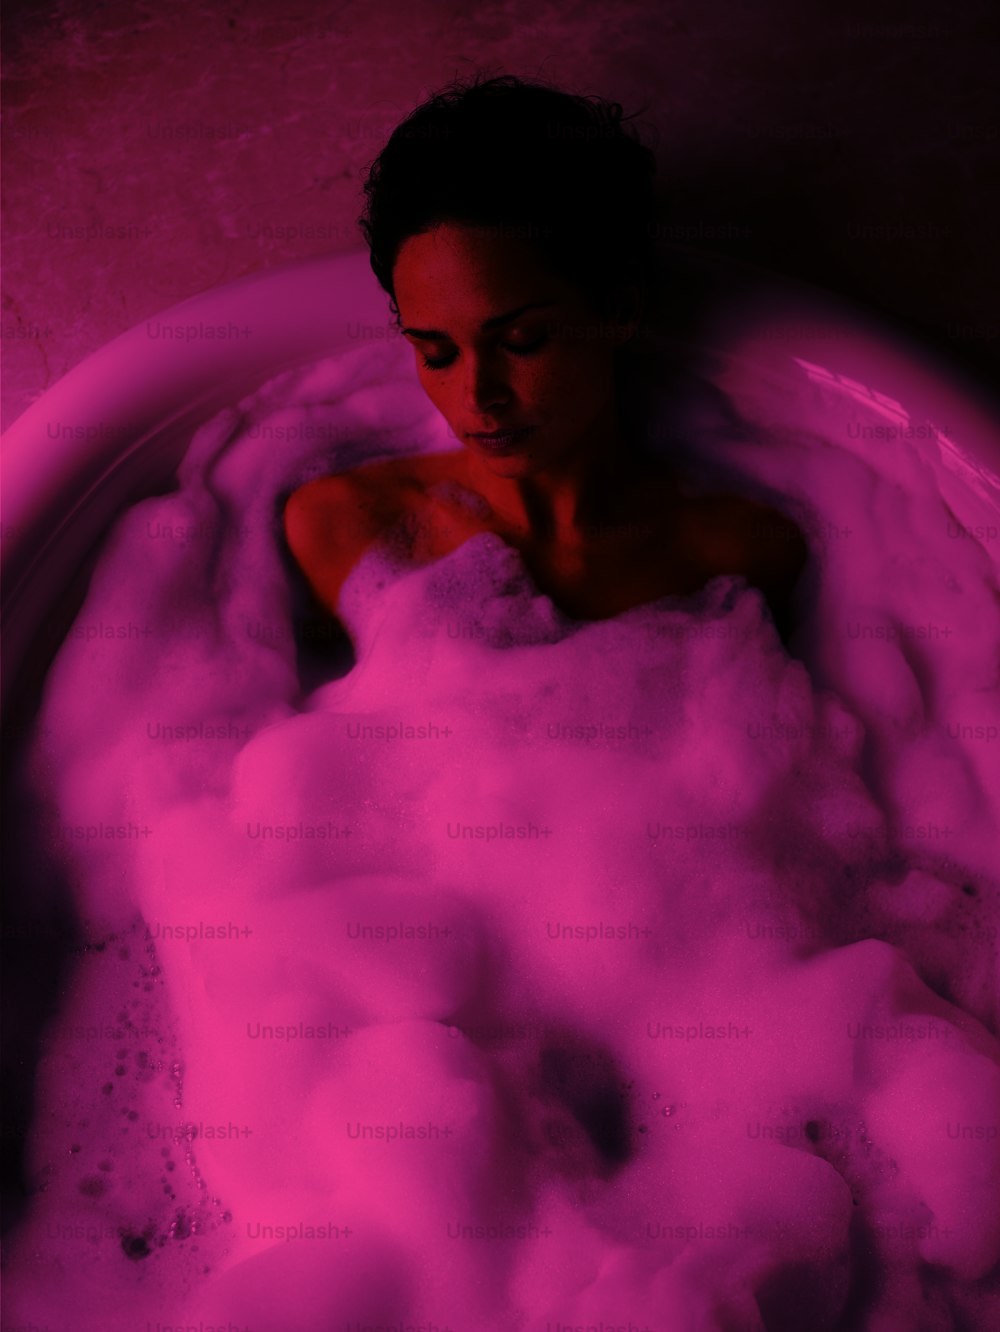 a woman sitting in a bathtub filled with foam